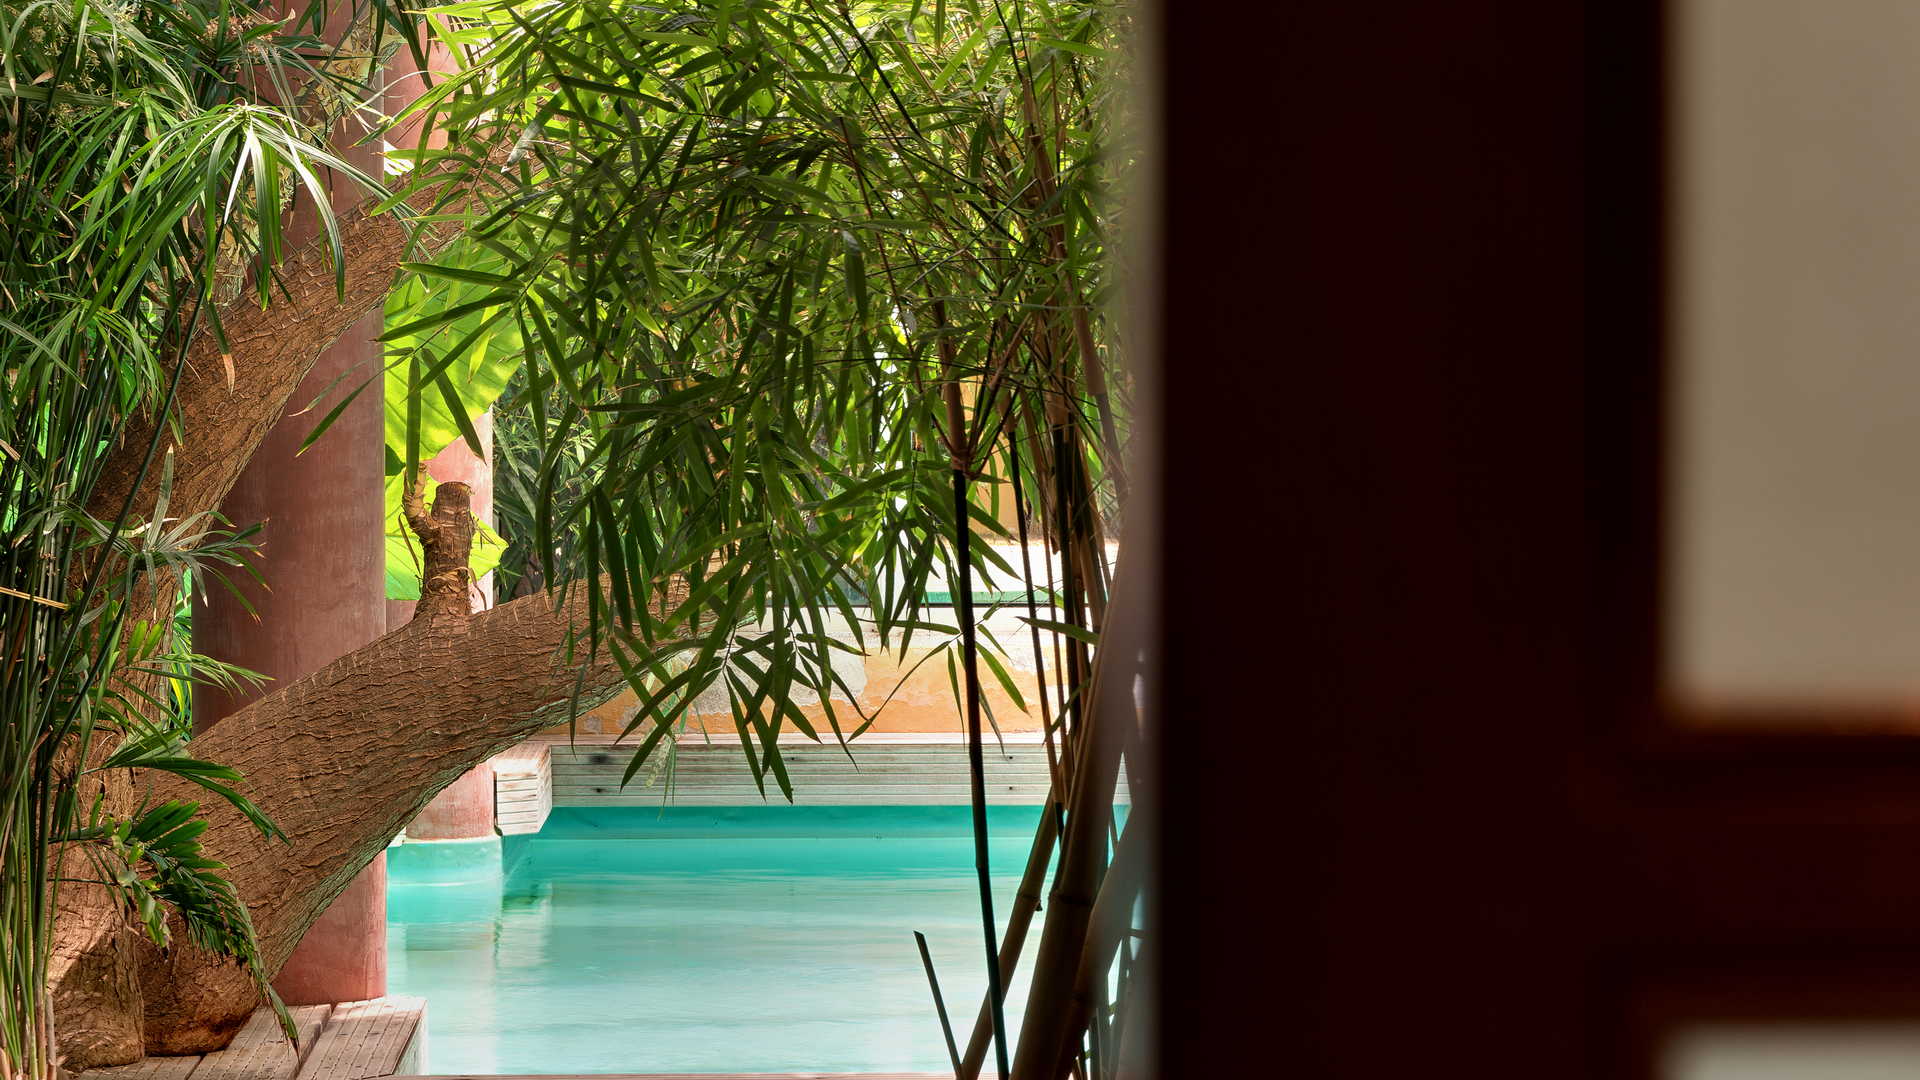 détail de la piscine avec bambous hôtel avec piscine proche de rodez et albi